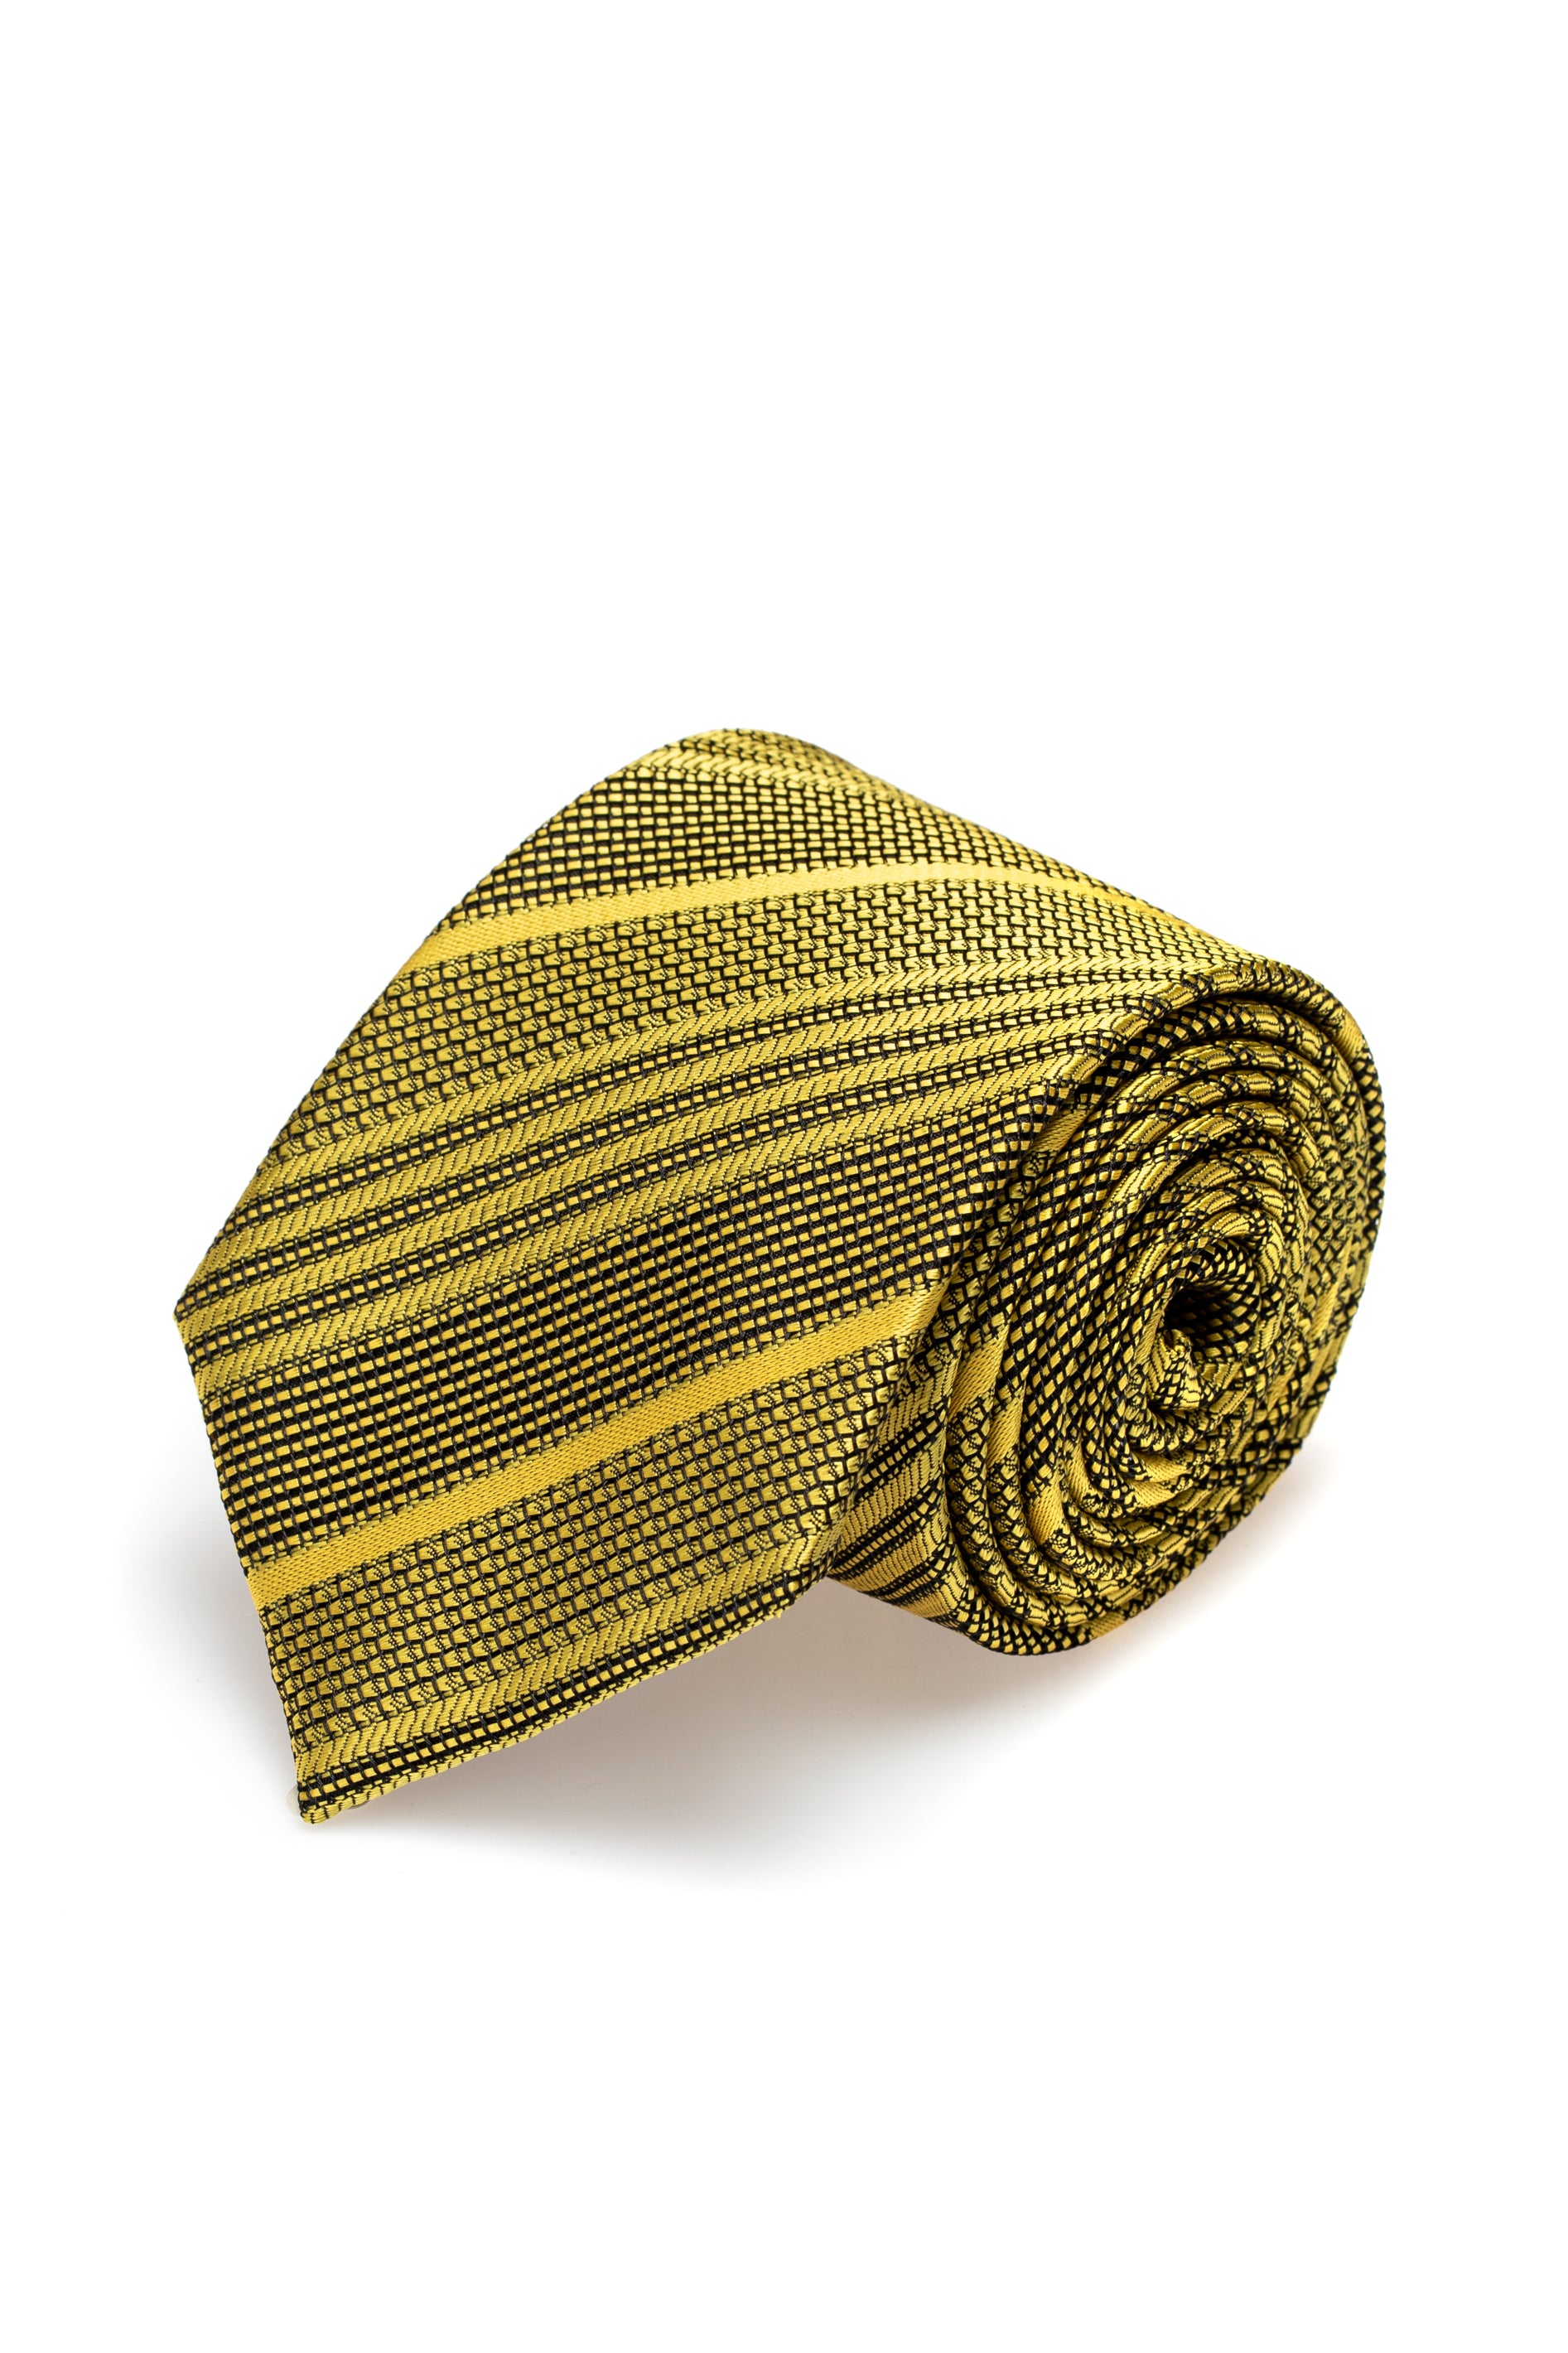 テクスチャとストライプの黄色のシルク ネクタイ